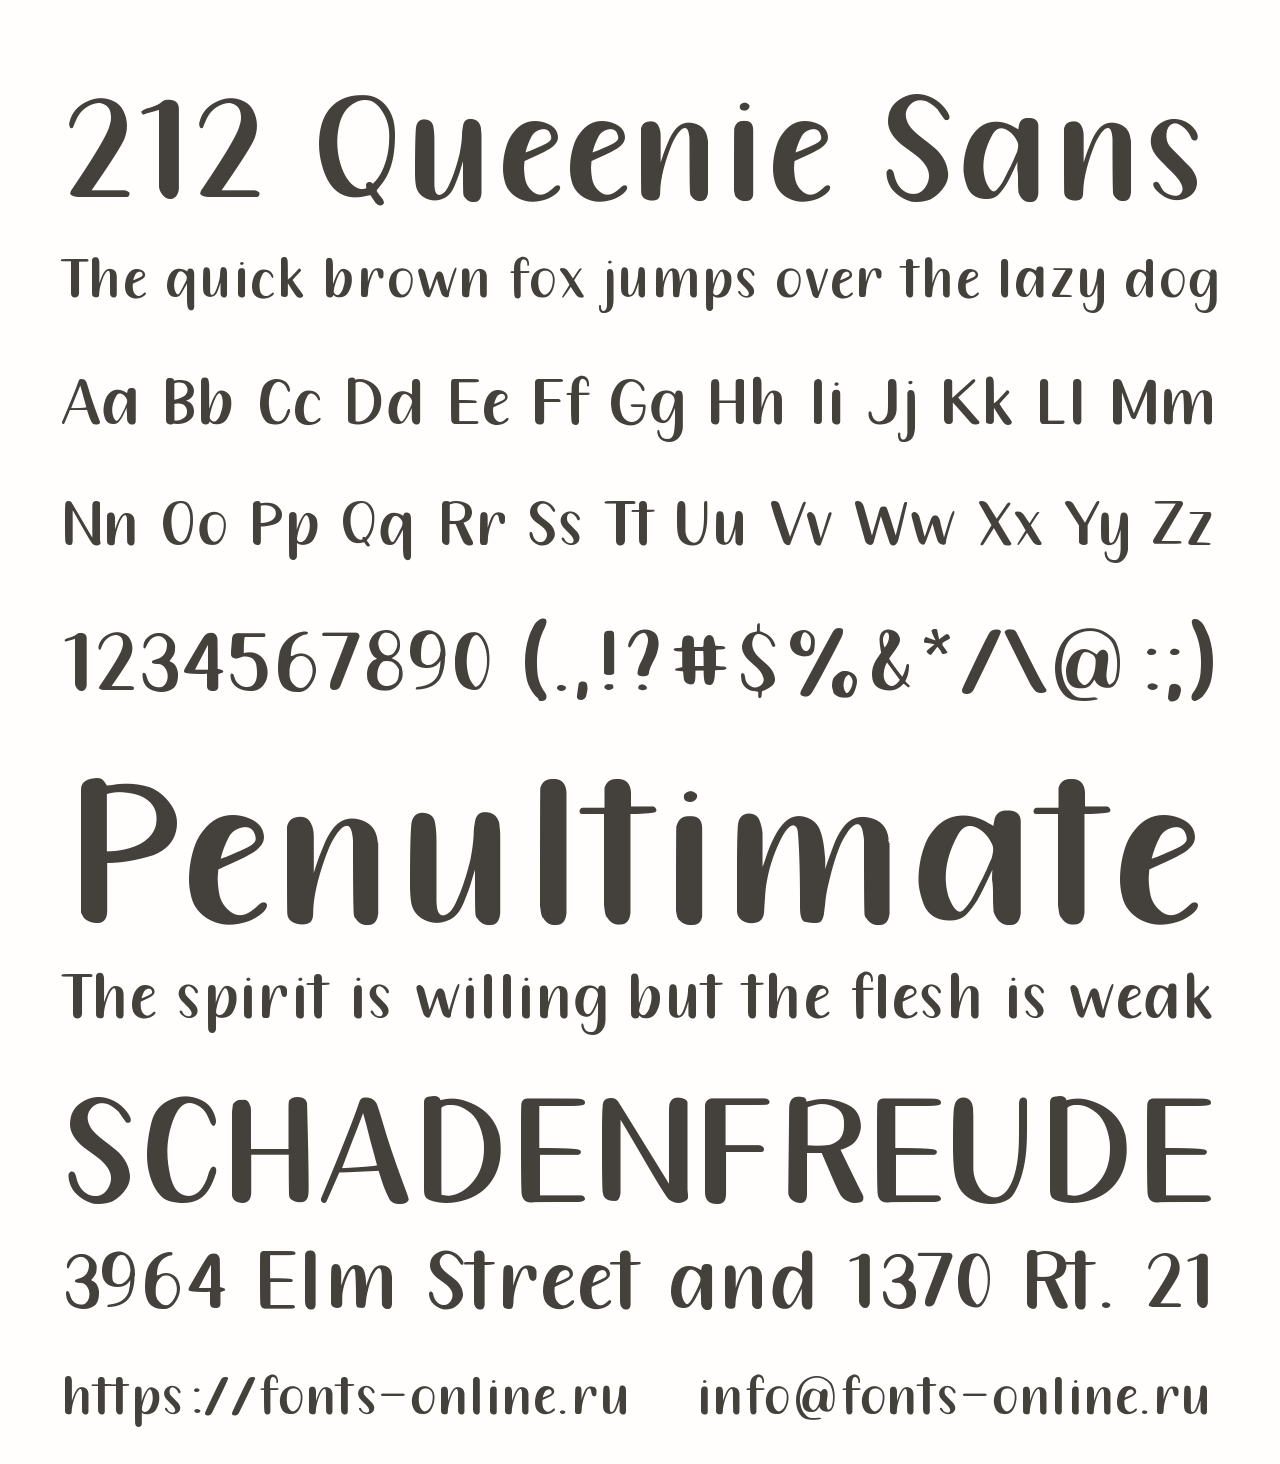 Шрифт 212 Queenie Sans